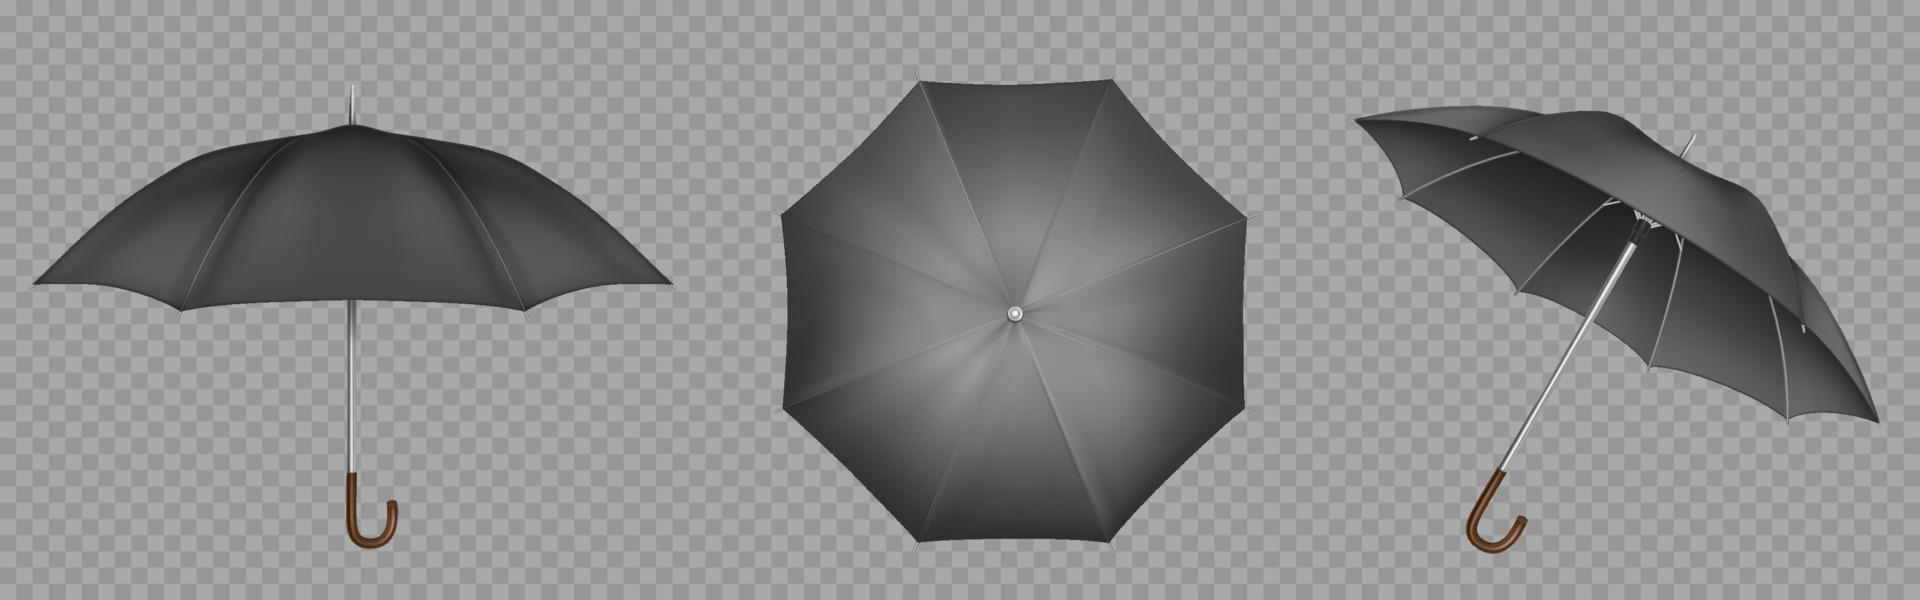 Geen eer diepgaand zwart paraplu, parasol bovenkant, kant en voorkant visie 15484183  Vectorkunst bij Vecteezy